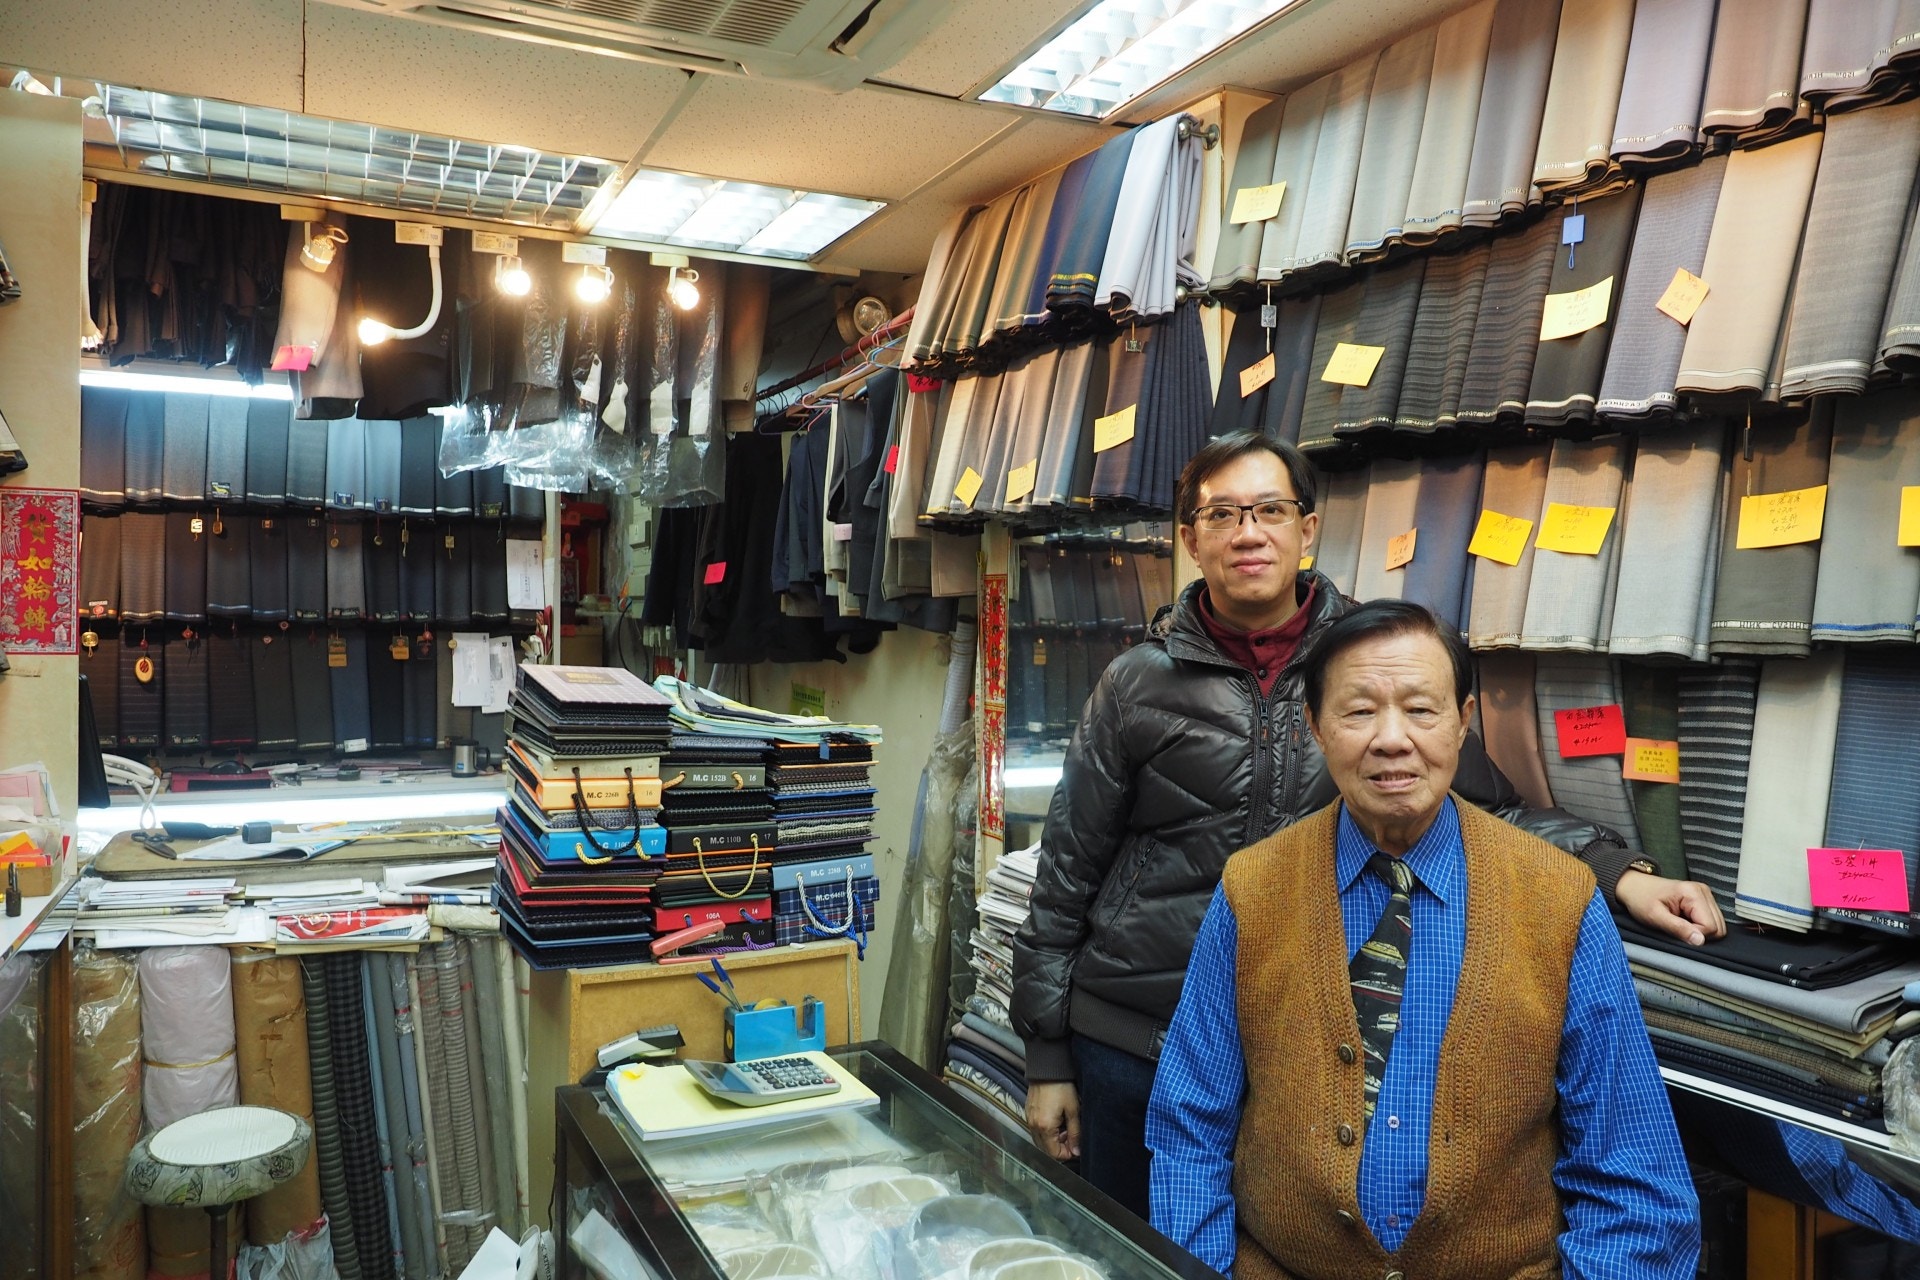 黃埔街重建 屹立六十年洋服店的紅磡回憶 客人竟是船塢工人 香港01 社區專題